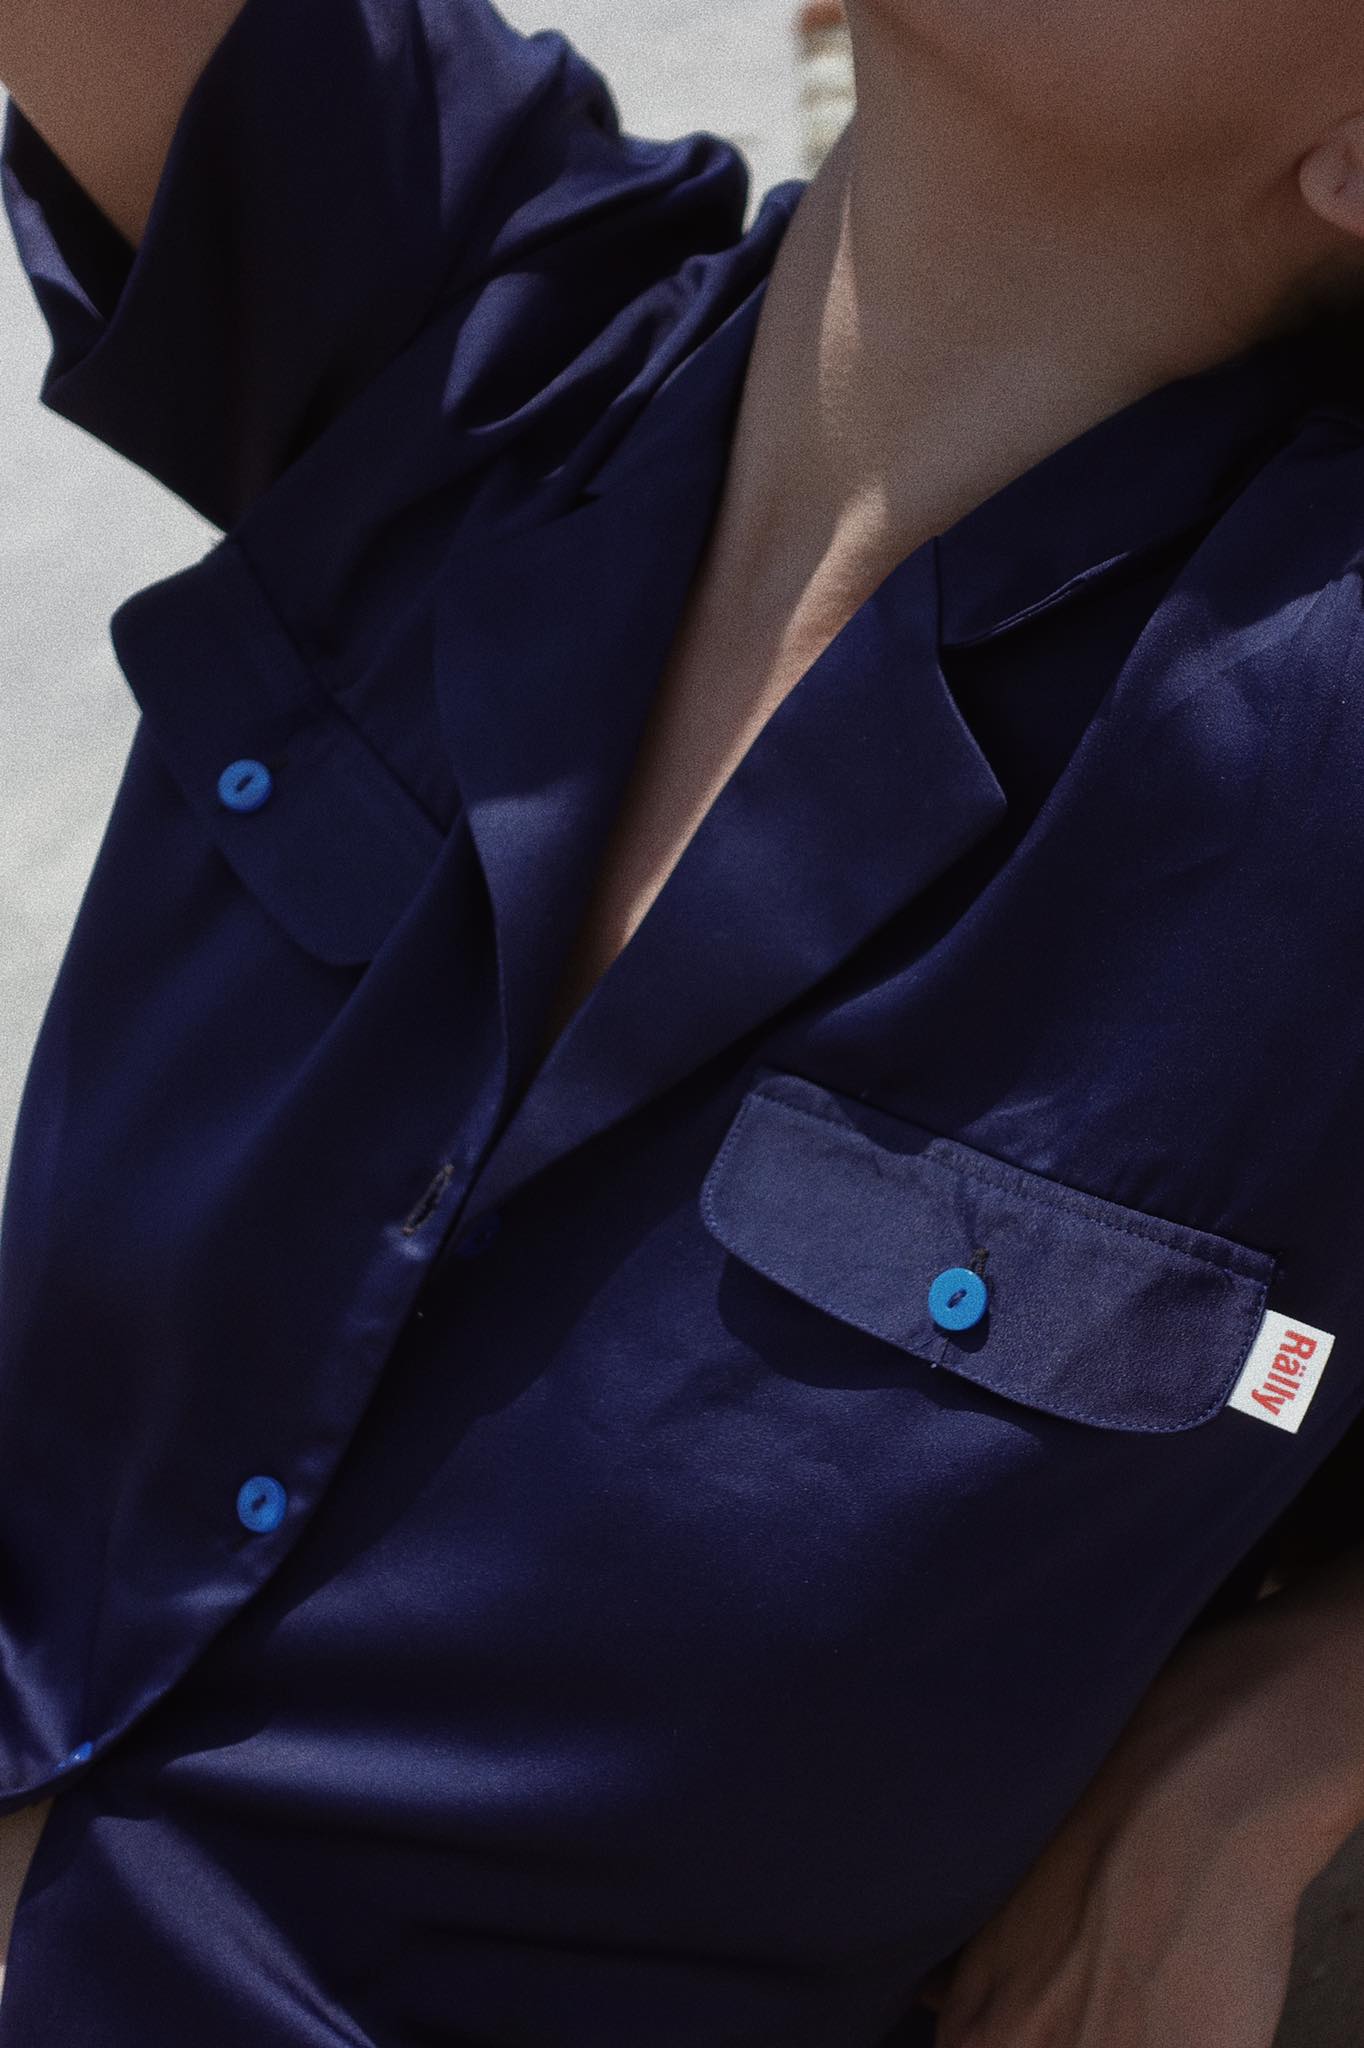 RALLY Classic Notched shirt (Navy) - เชิ้ตแขนสั้นดีเทลกระเป๋าสีกรม สี น้ำเงินเข้ม สี น้ำเงินเข้มไซส์ M